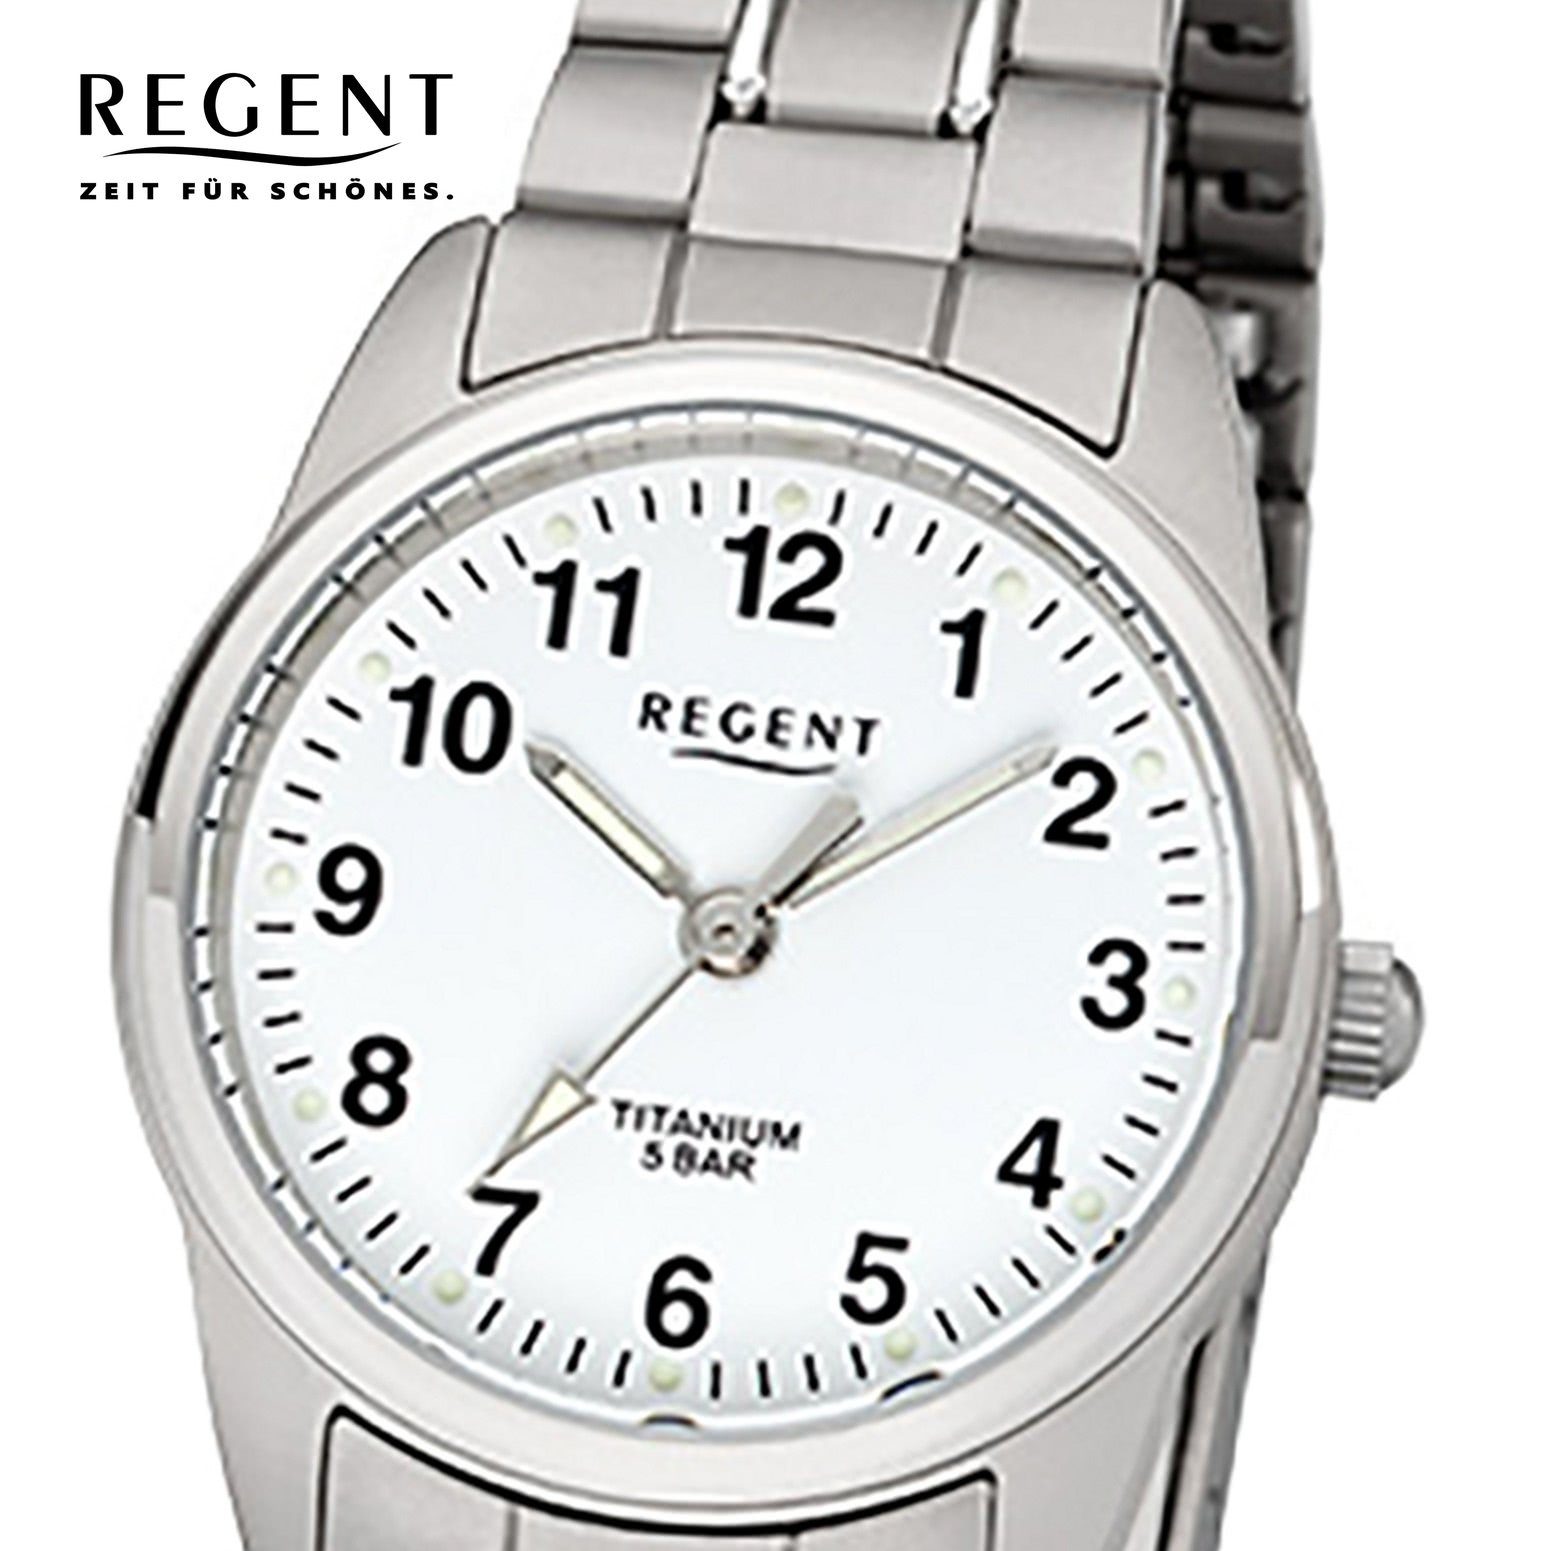 Quarzuhr (ca. grau Regent Damen-Armbanduhr 26mm), Damen Analog, Armbanduhr silber Titanarmband Regent klein rund,